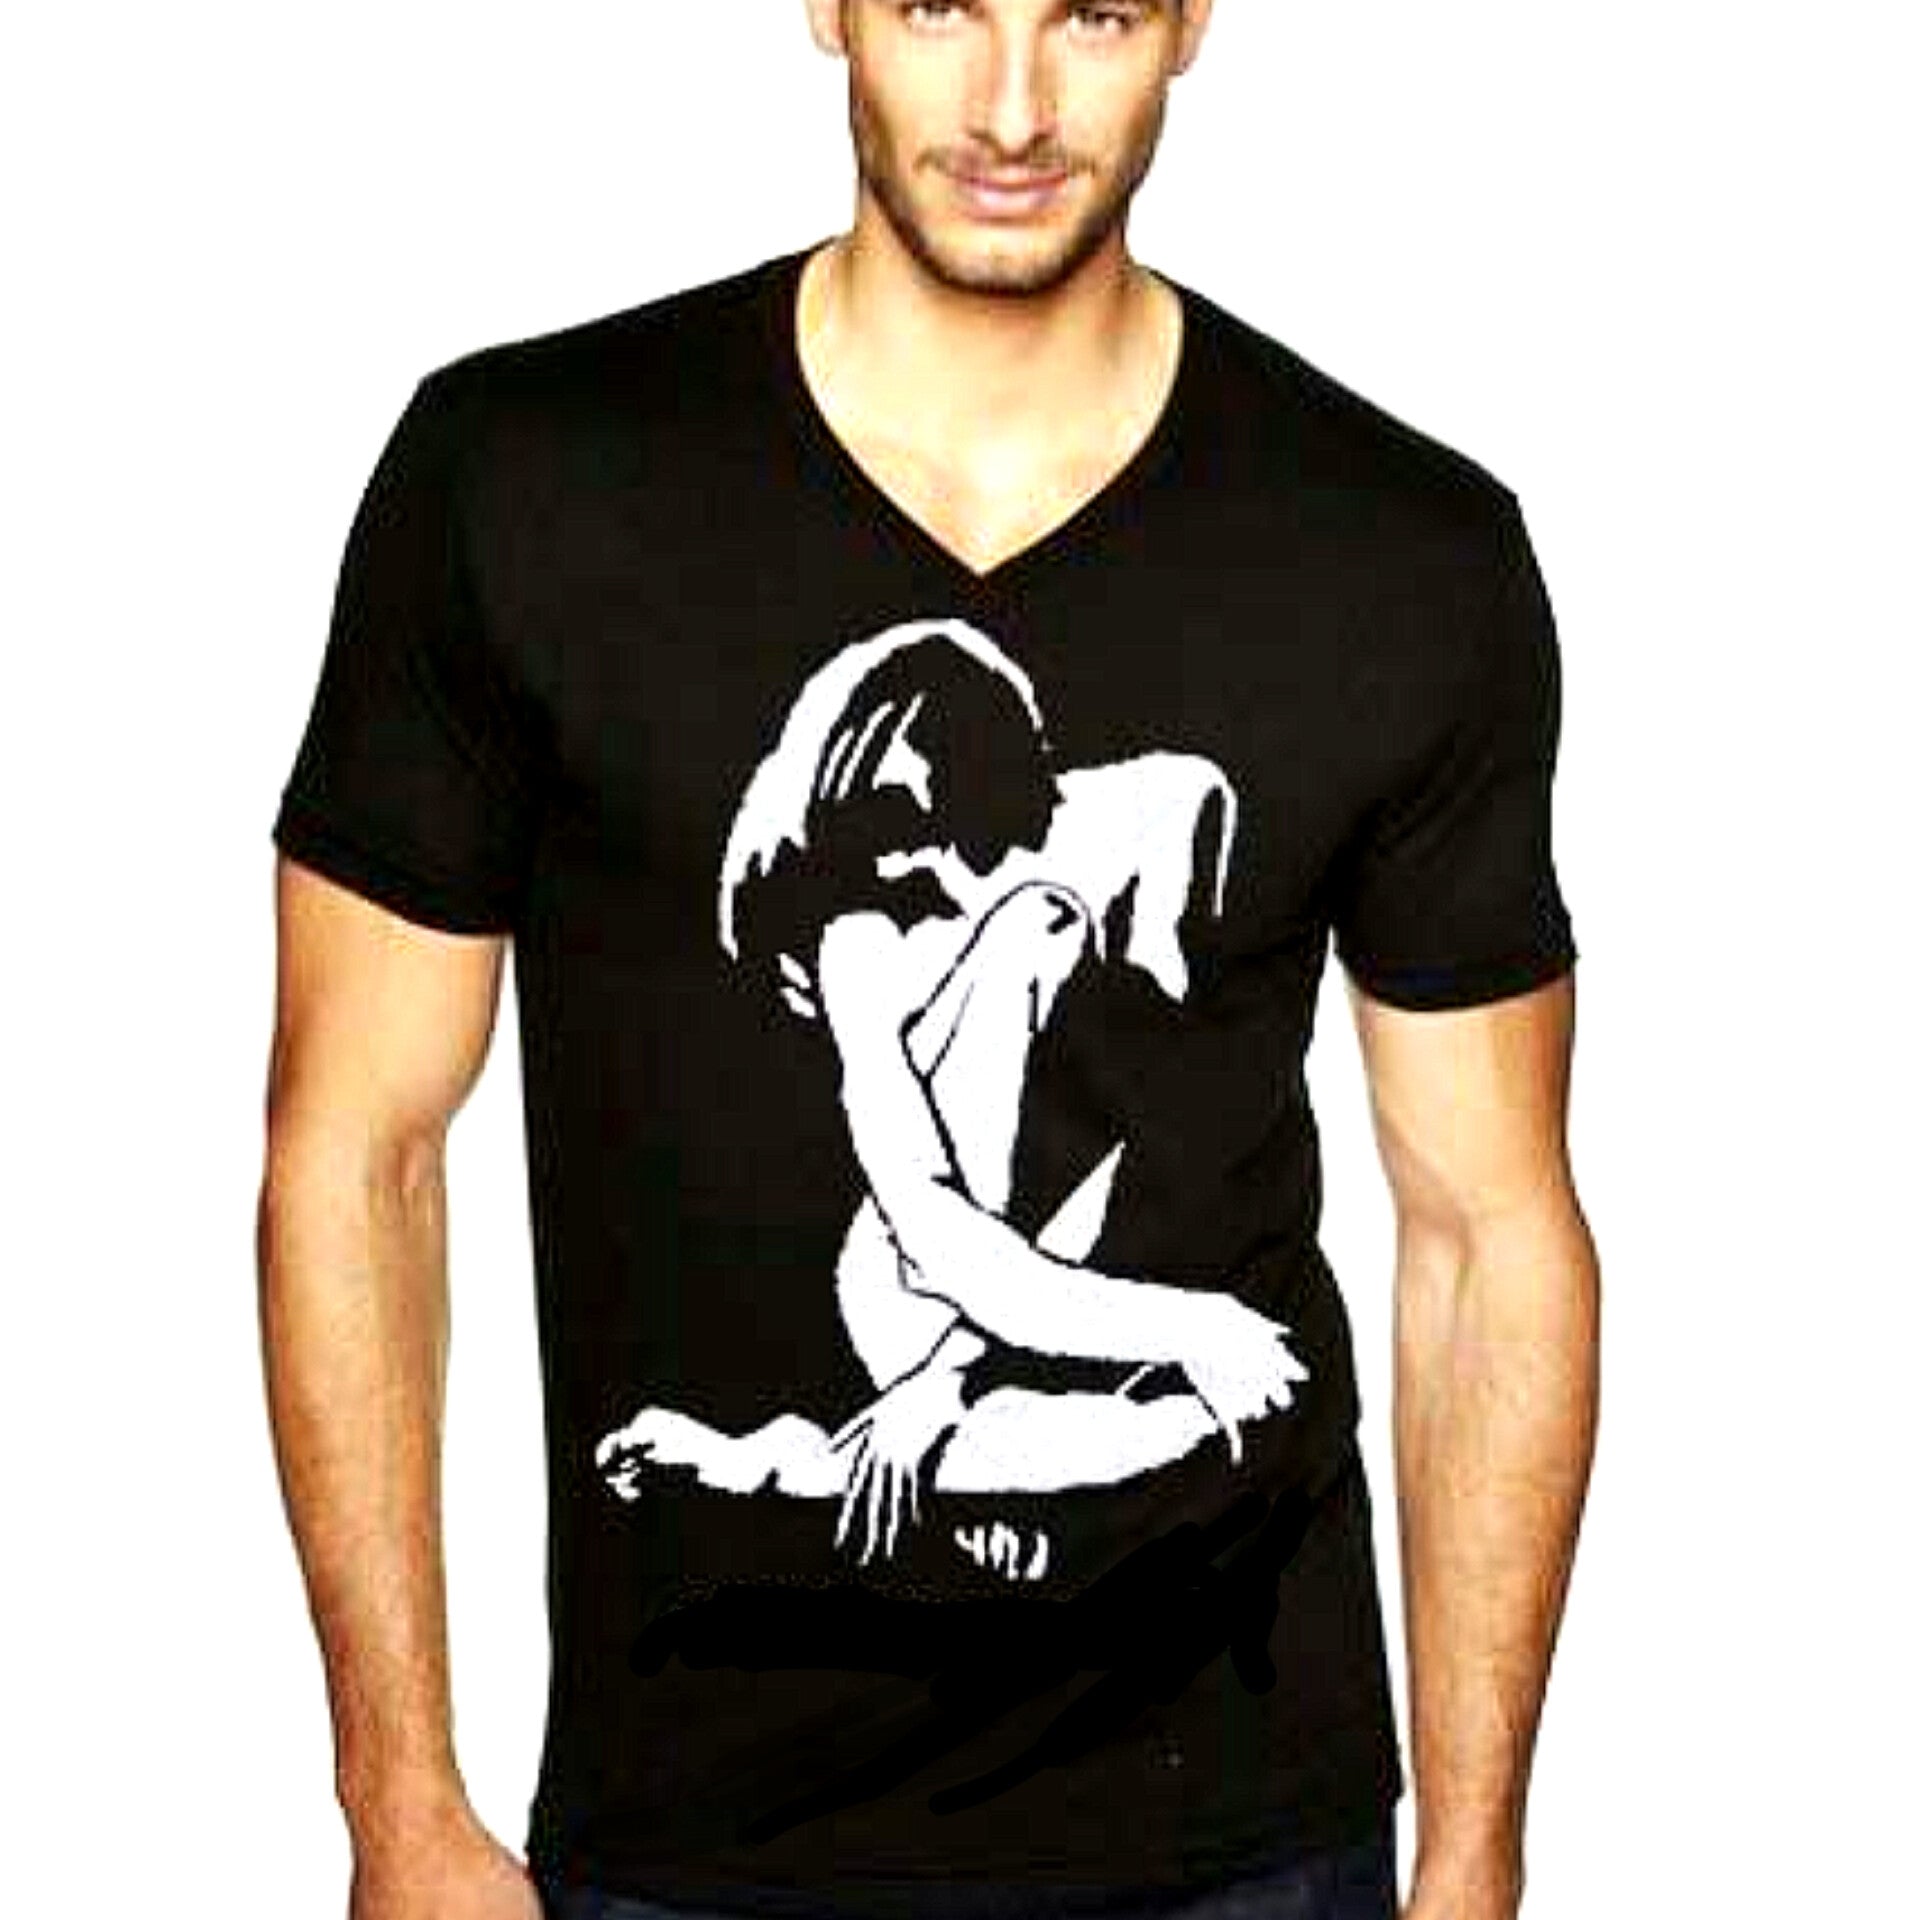 Nk ltd Wearable Art T-shirt